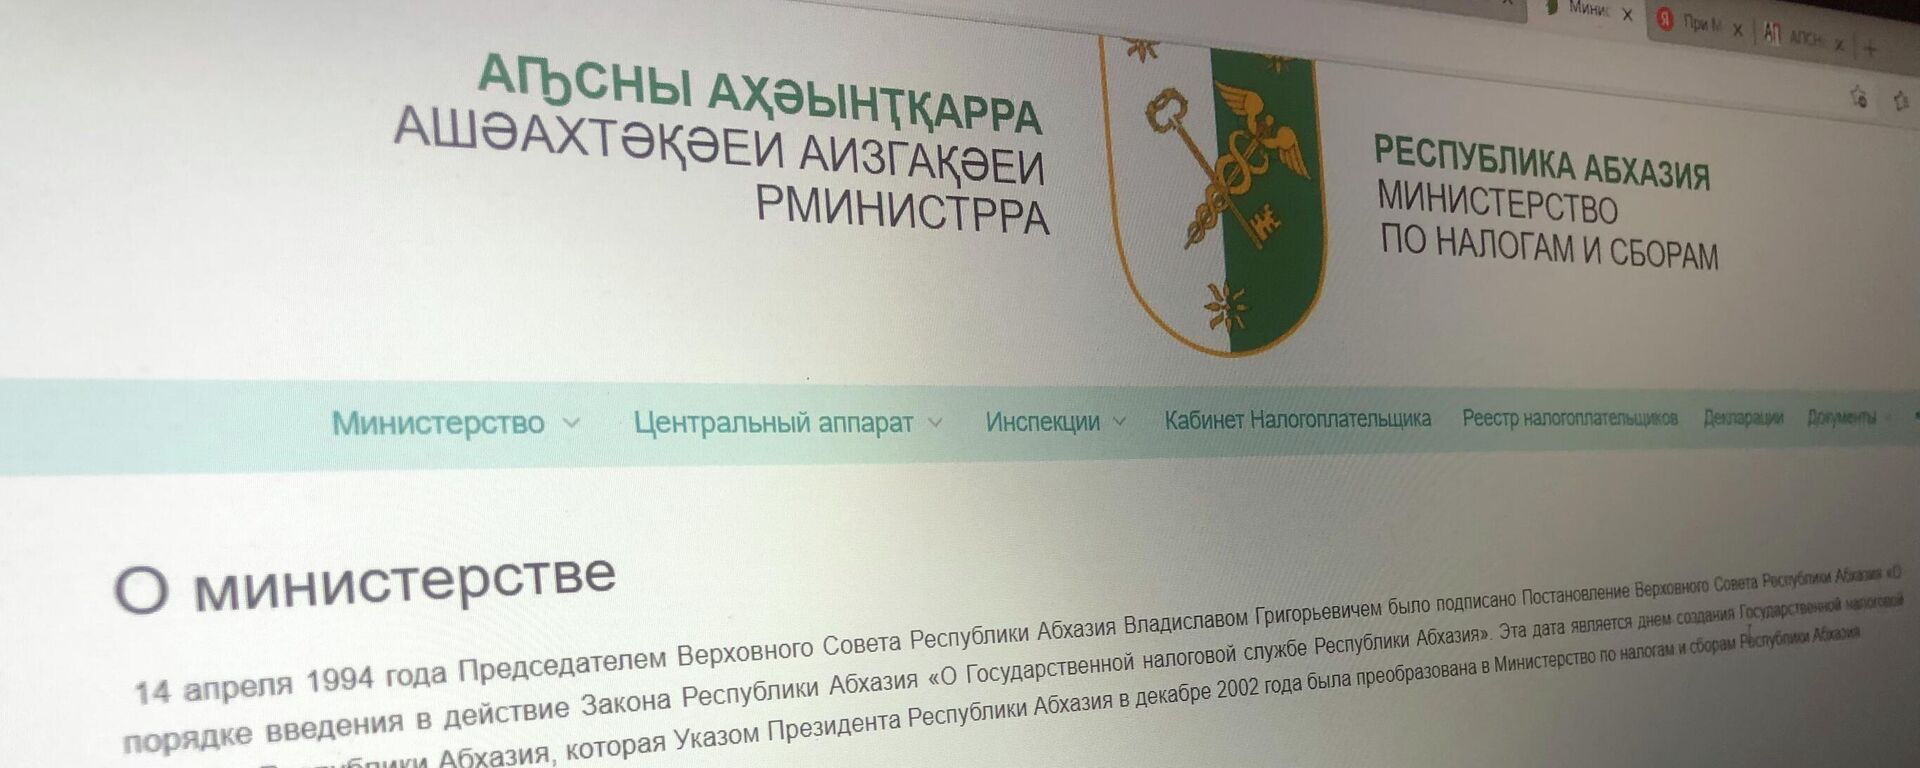 Официальный сайт Министерства по Налогам и сборам  - Sputnik Абхазия, 1920, 01.02.2022